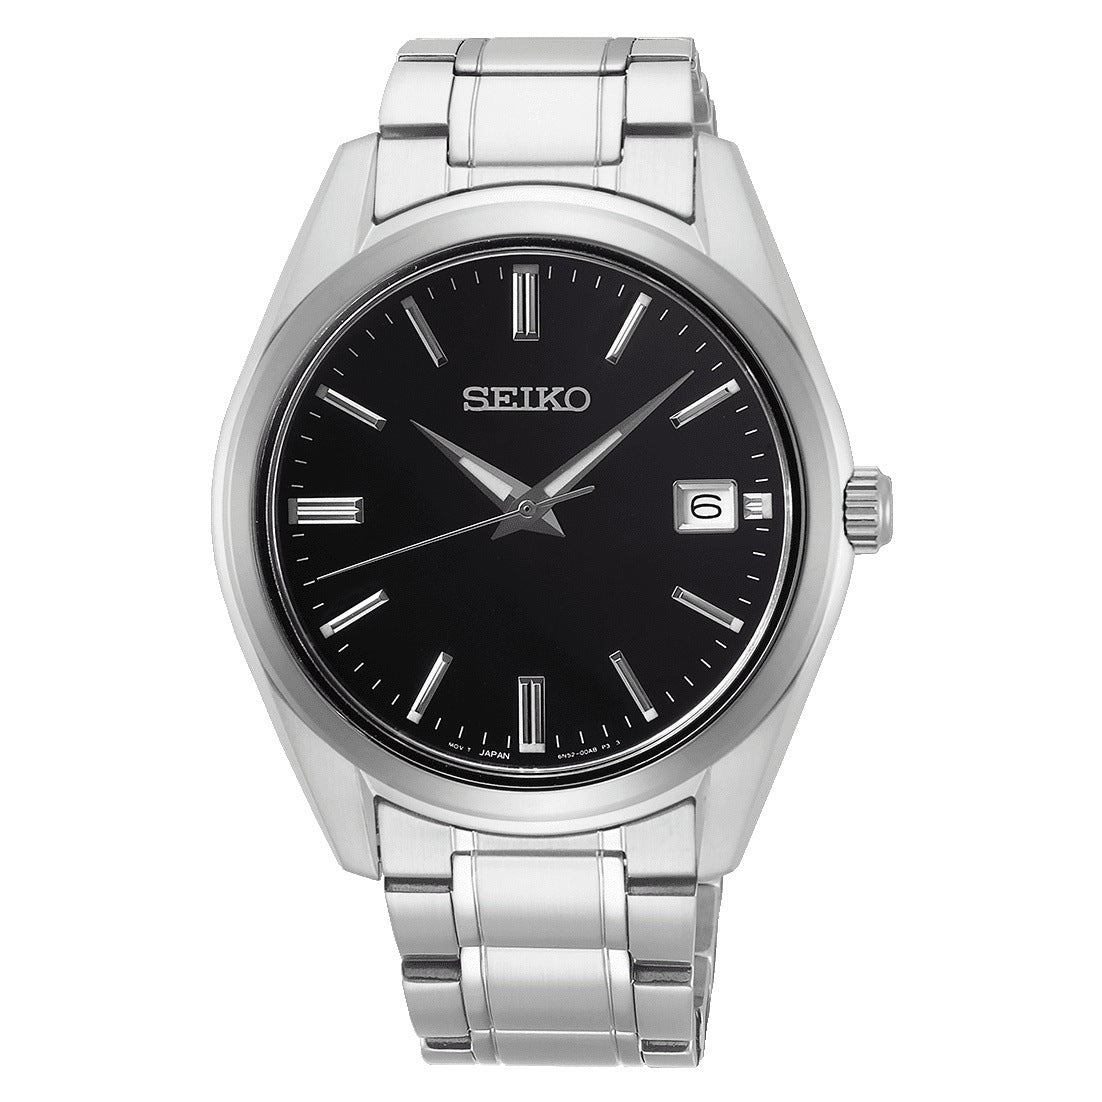 Seiko Men's NZD 525 watch - SUR311P1